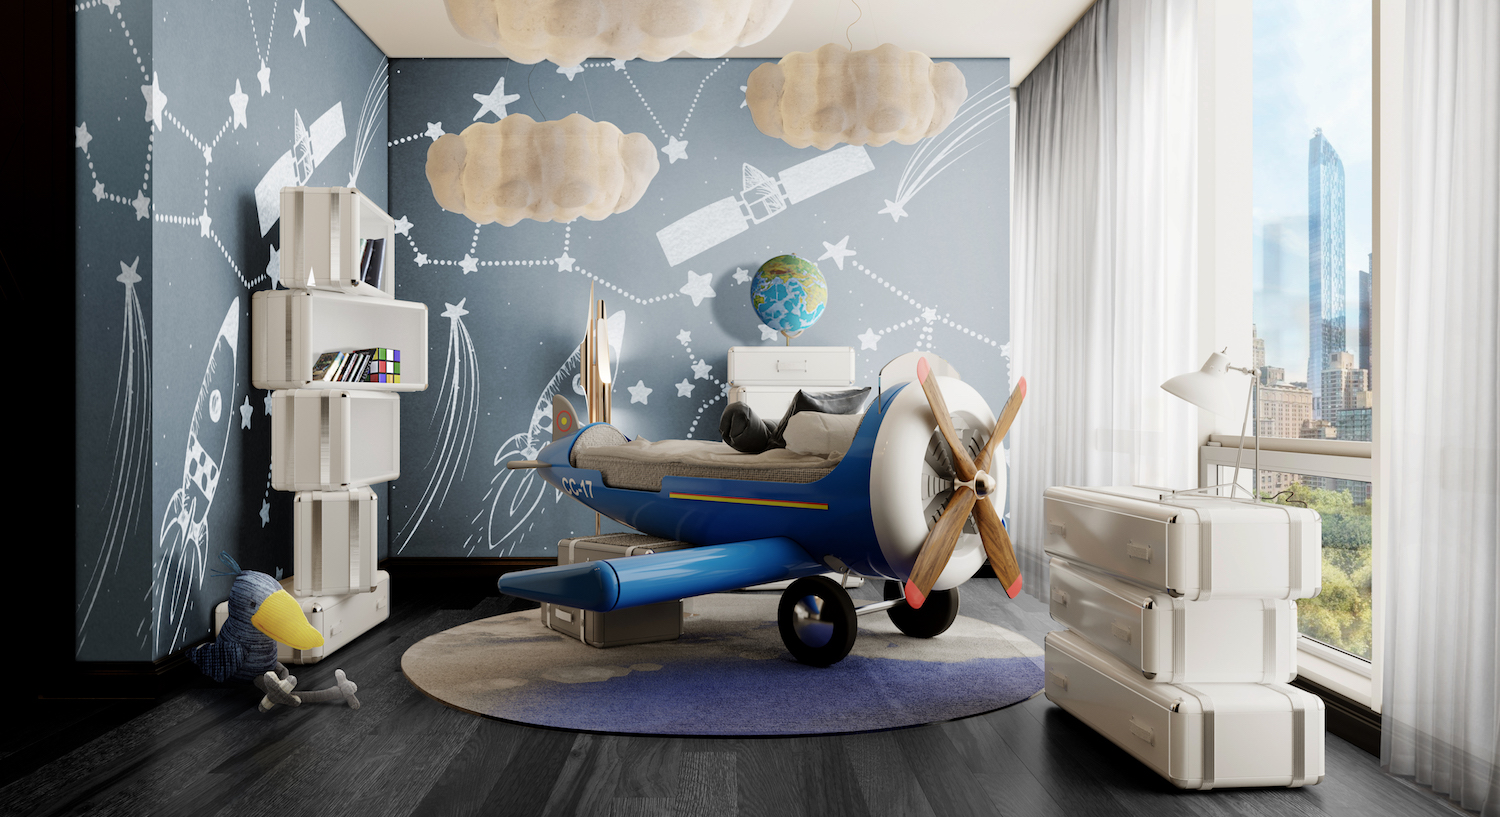 furniture for kids children bedroom bed room playroom ideas 2021